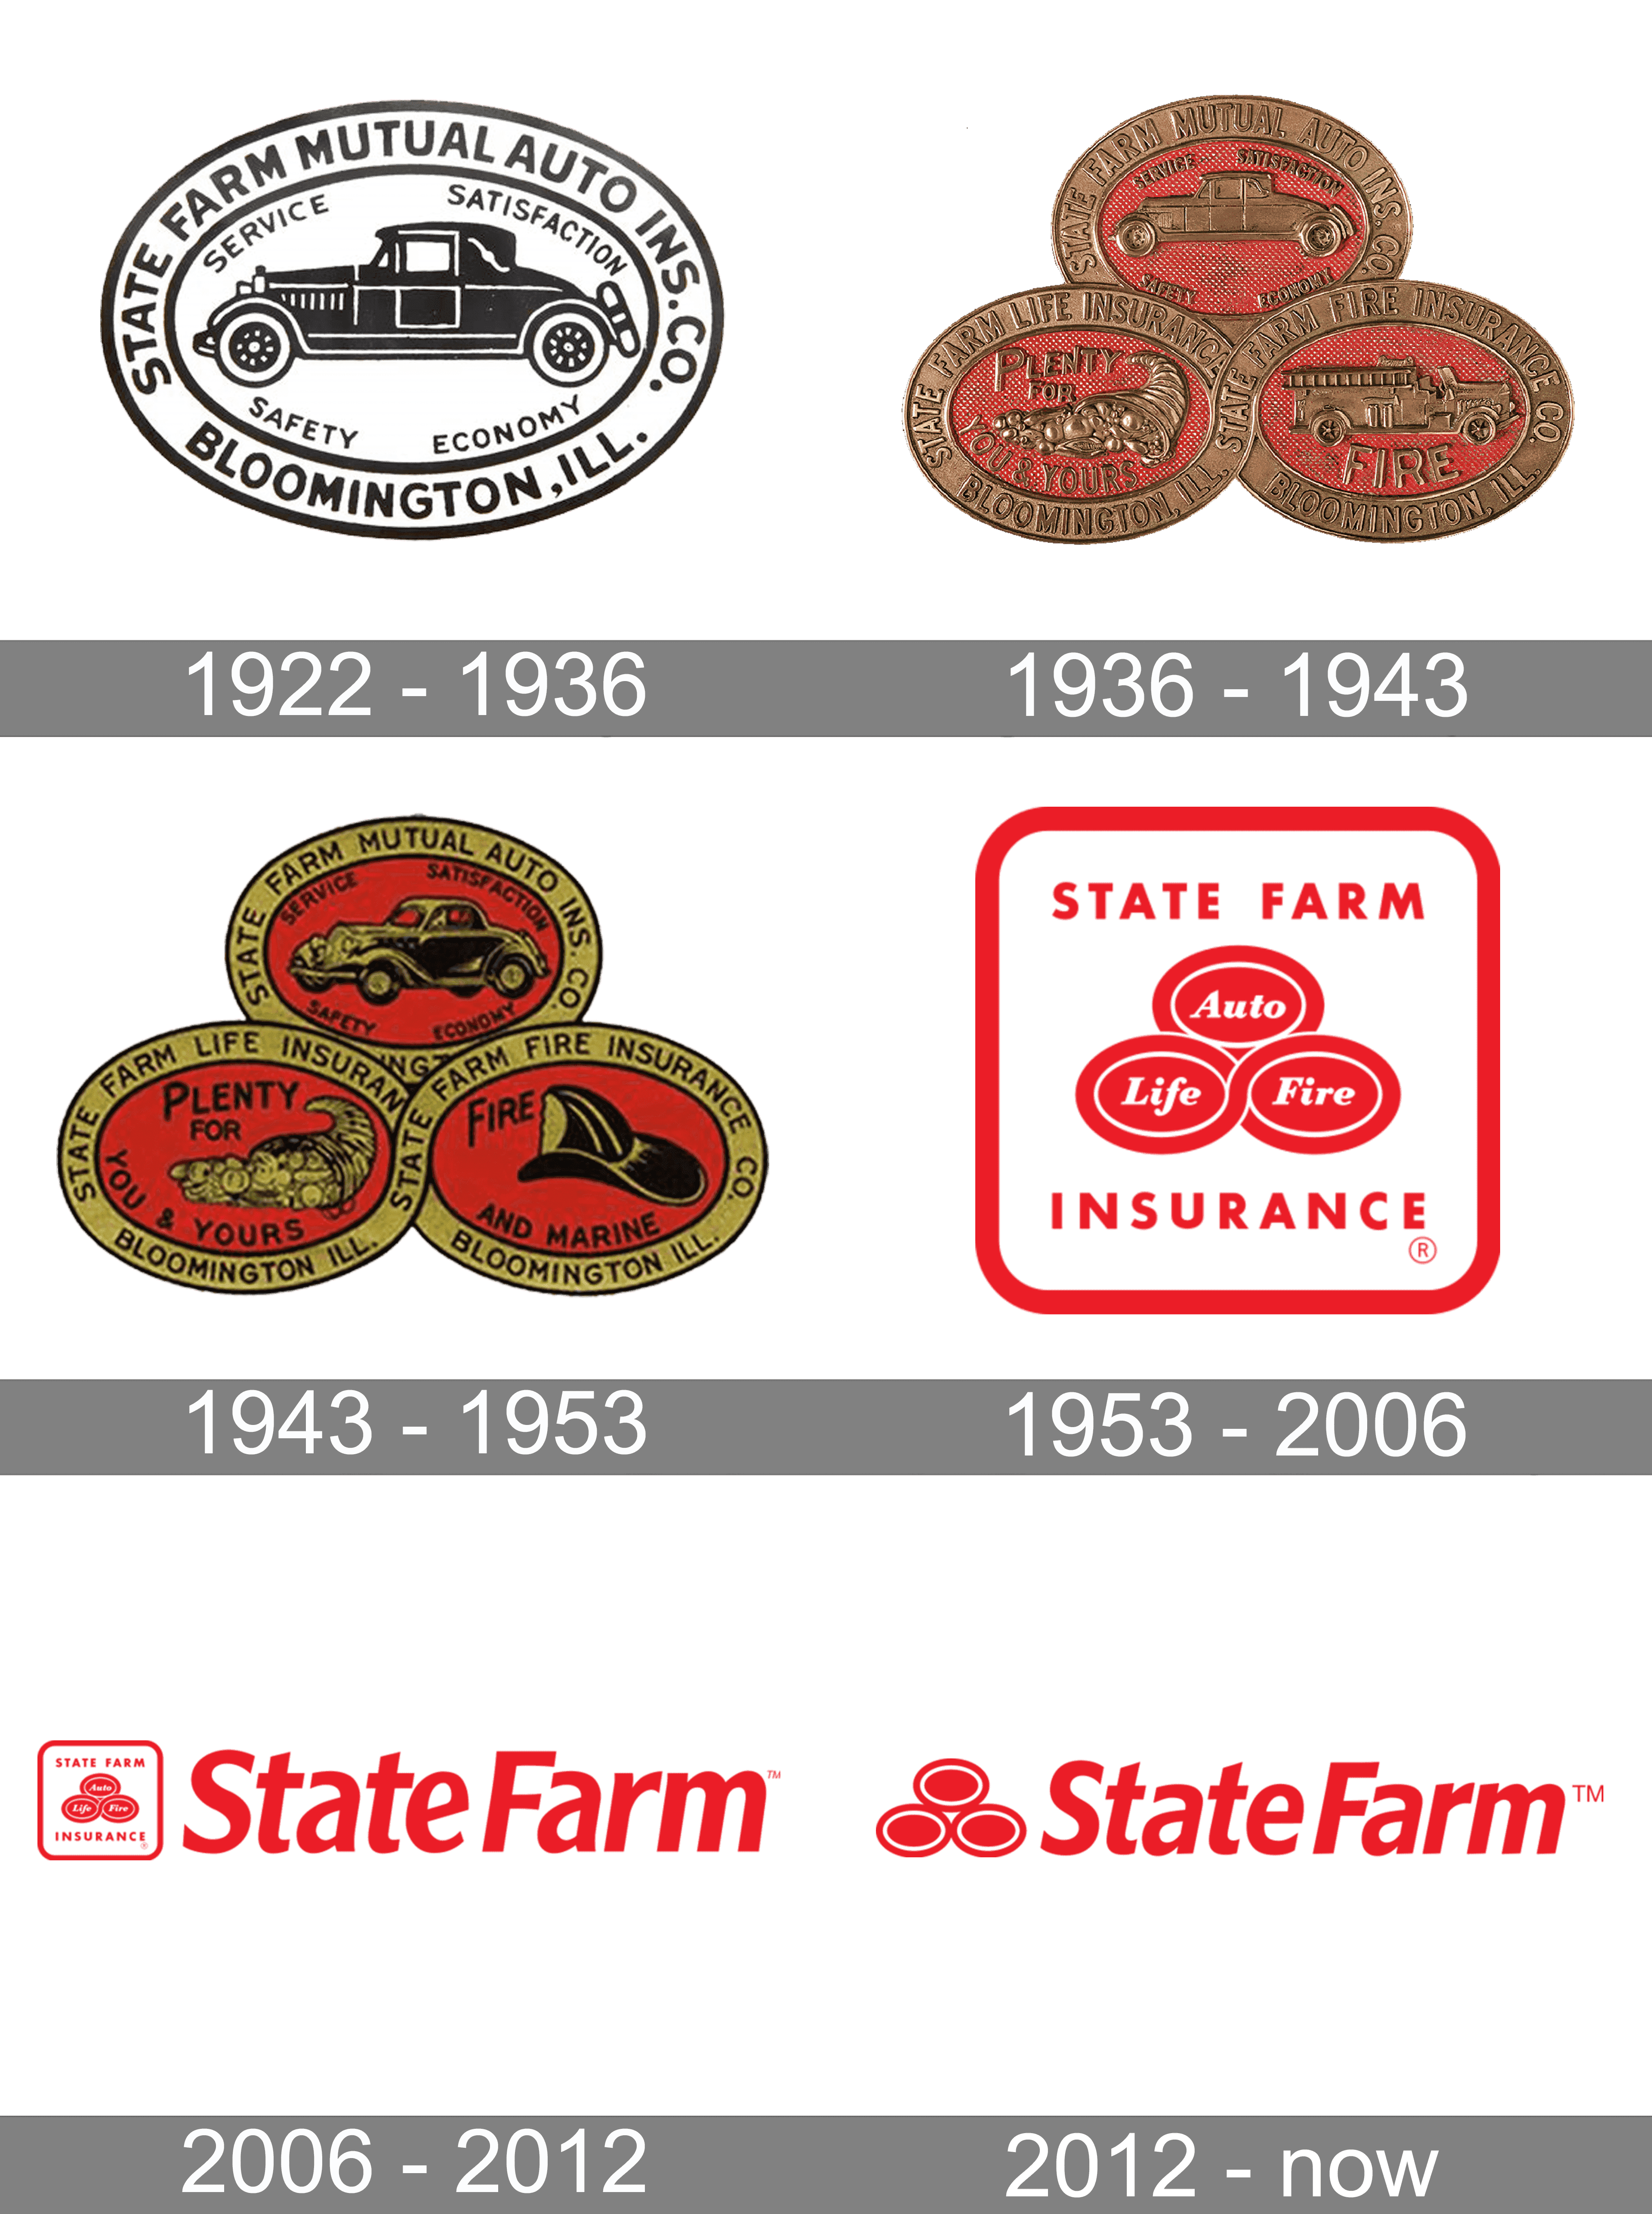 farm logos